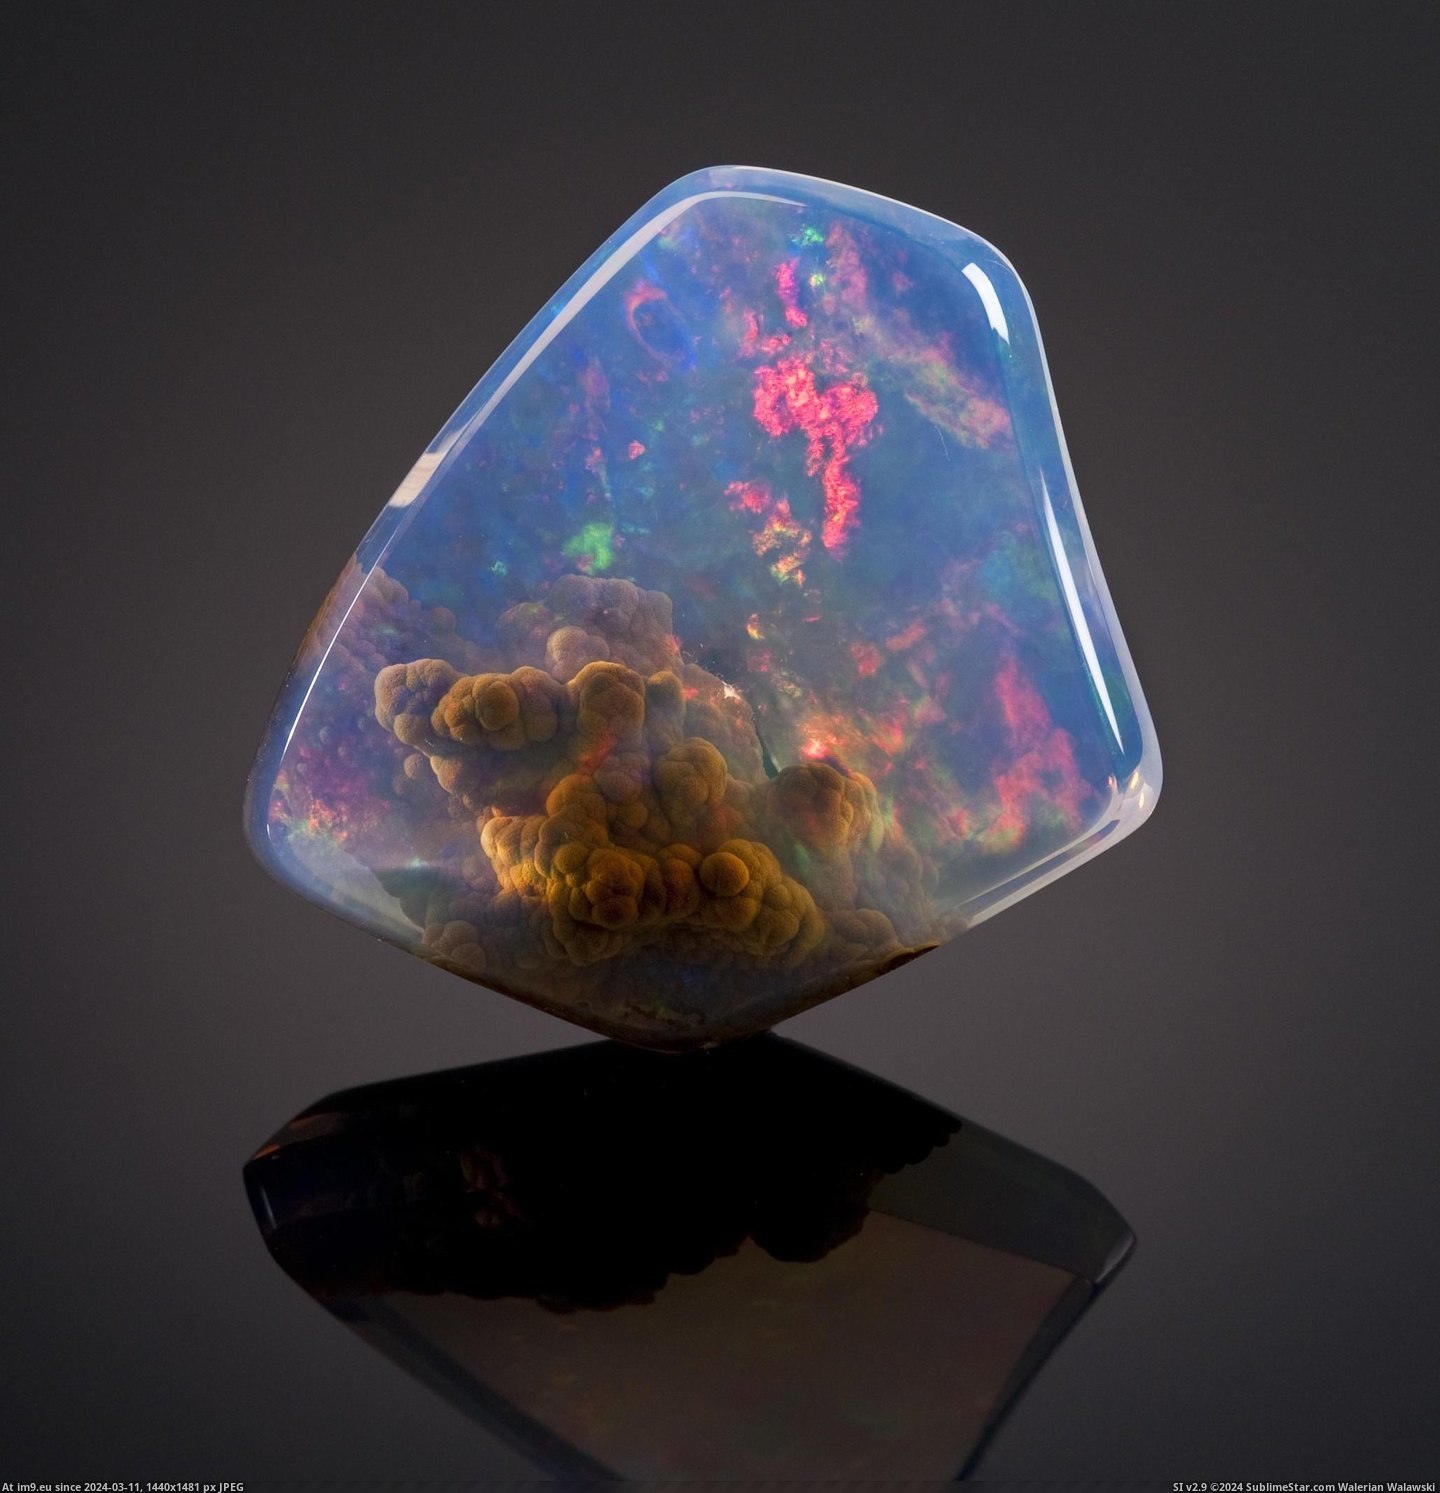 #Worth  #Opal [Pics] Contraluz opal worth $20000 Pic. (Obraz z album My r/PICS favs))